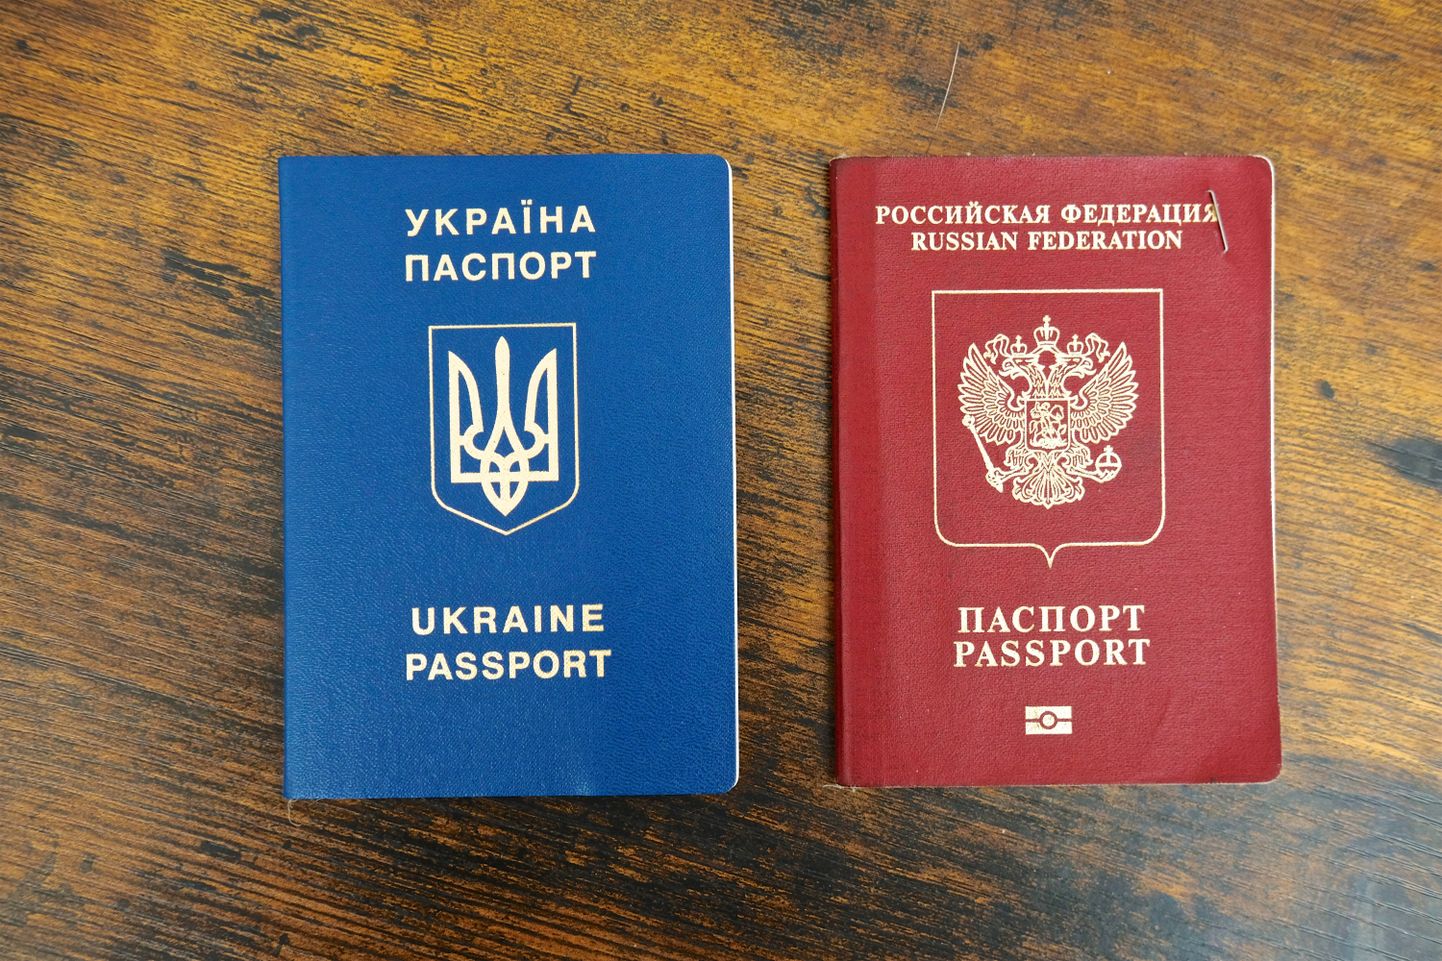 Erinevate maade passid pakuvad väga erinevaid reisimisvõimalusi. Mõni avab riiki pääsu justkui võluväel, teisega on suuri raskusi